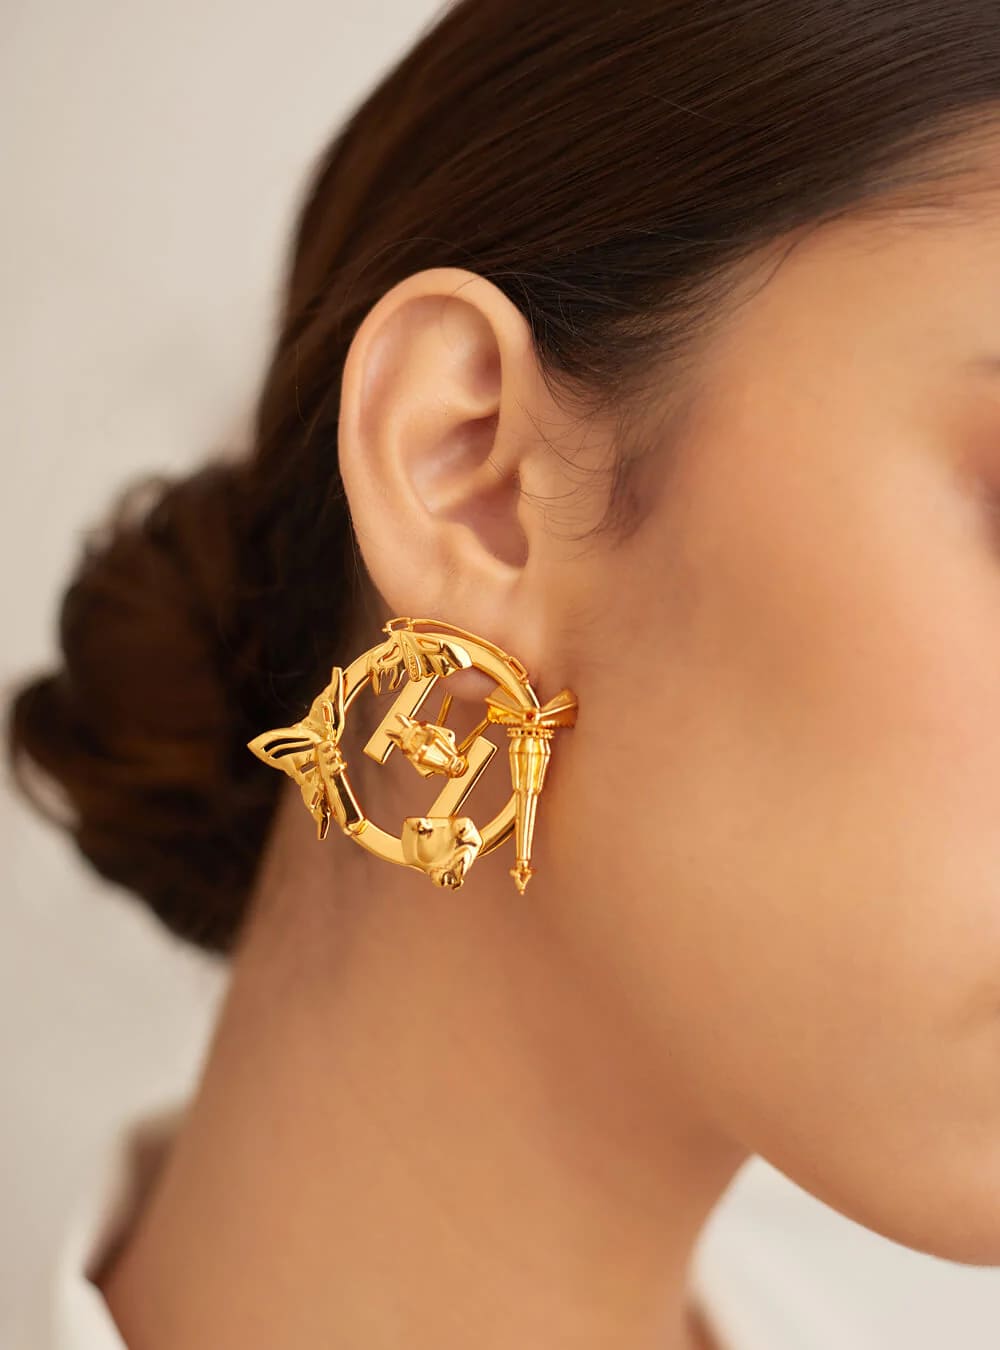 earrings for square face shape